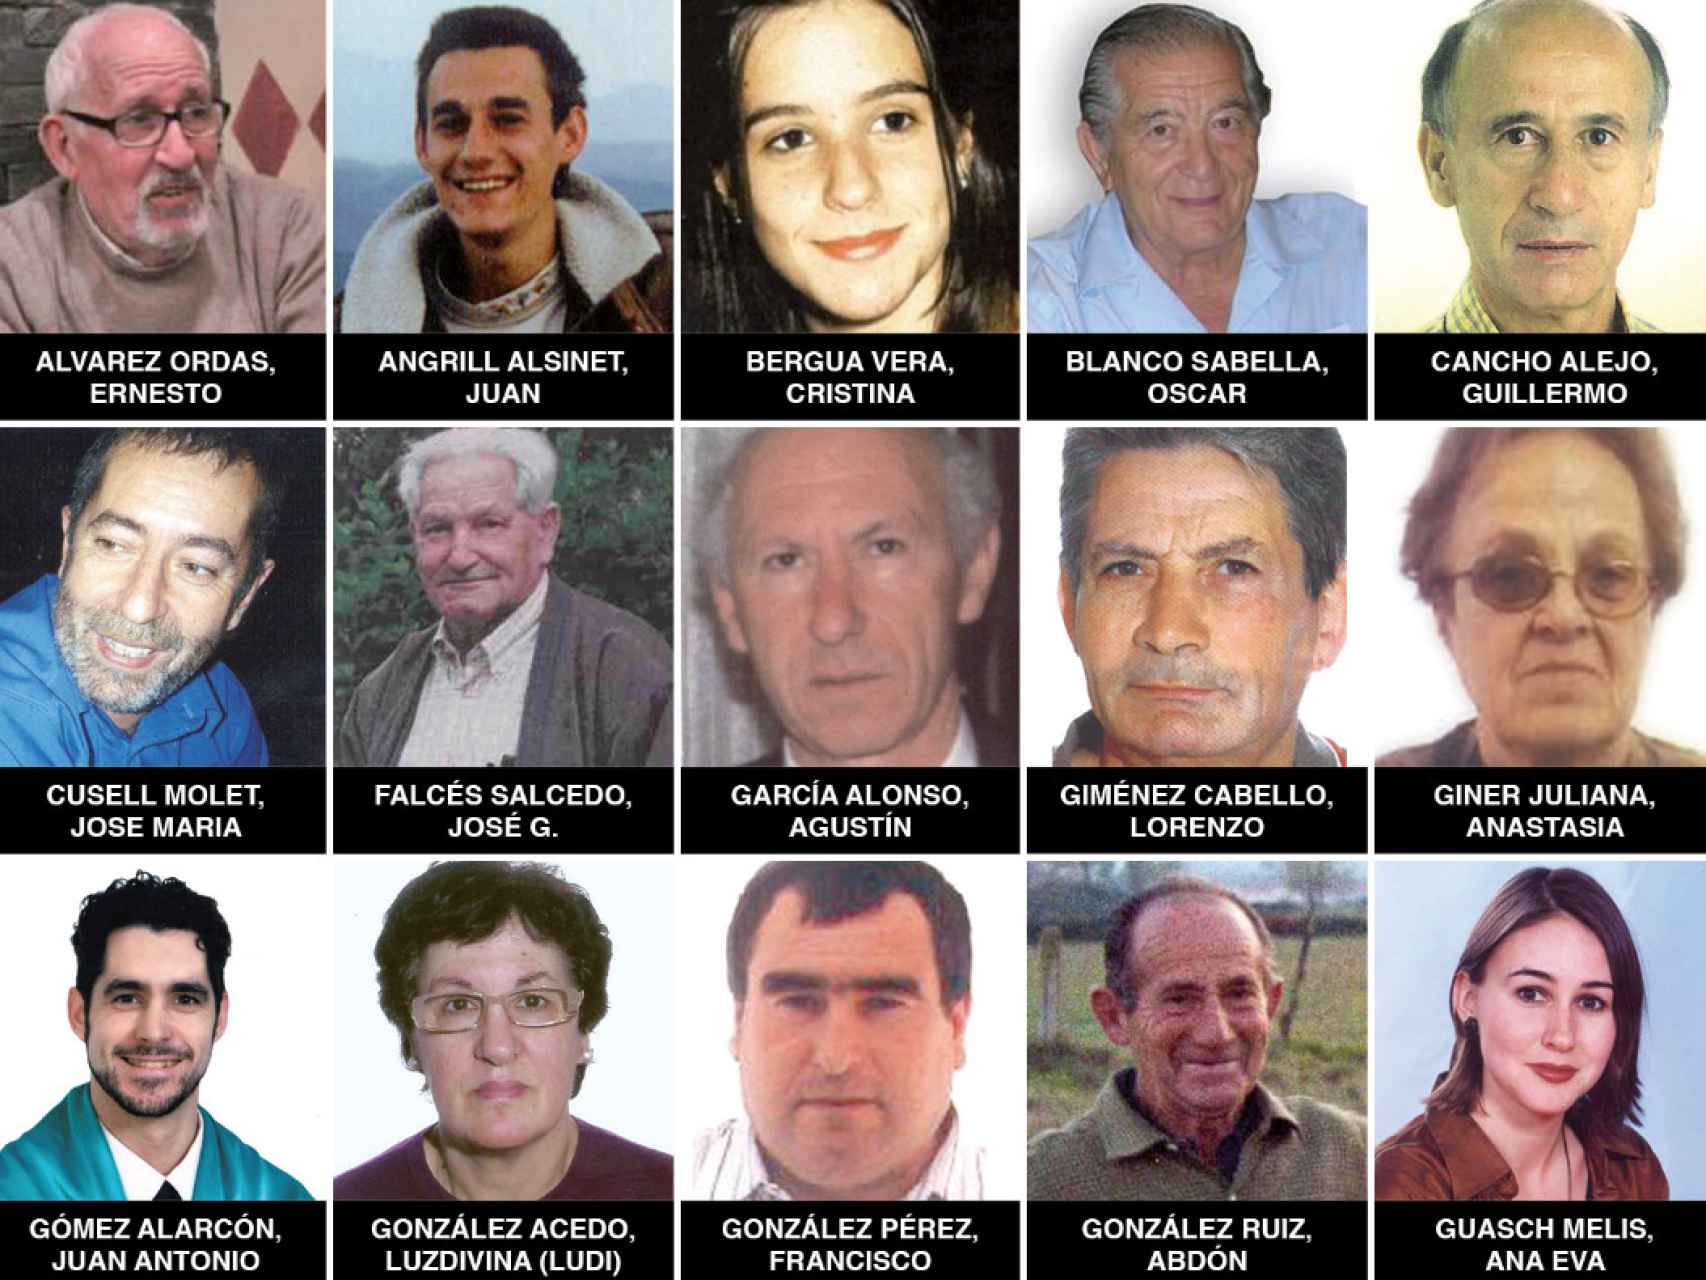 Personas desaparecidas, según la web de InterSOS